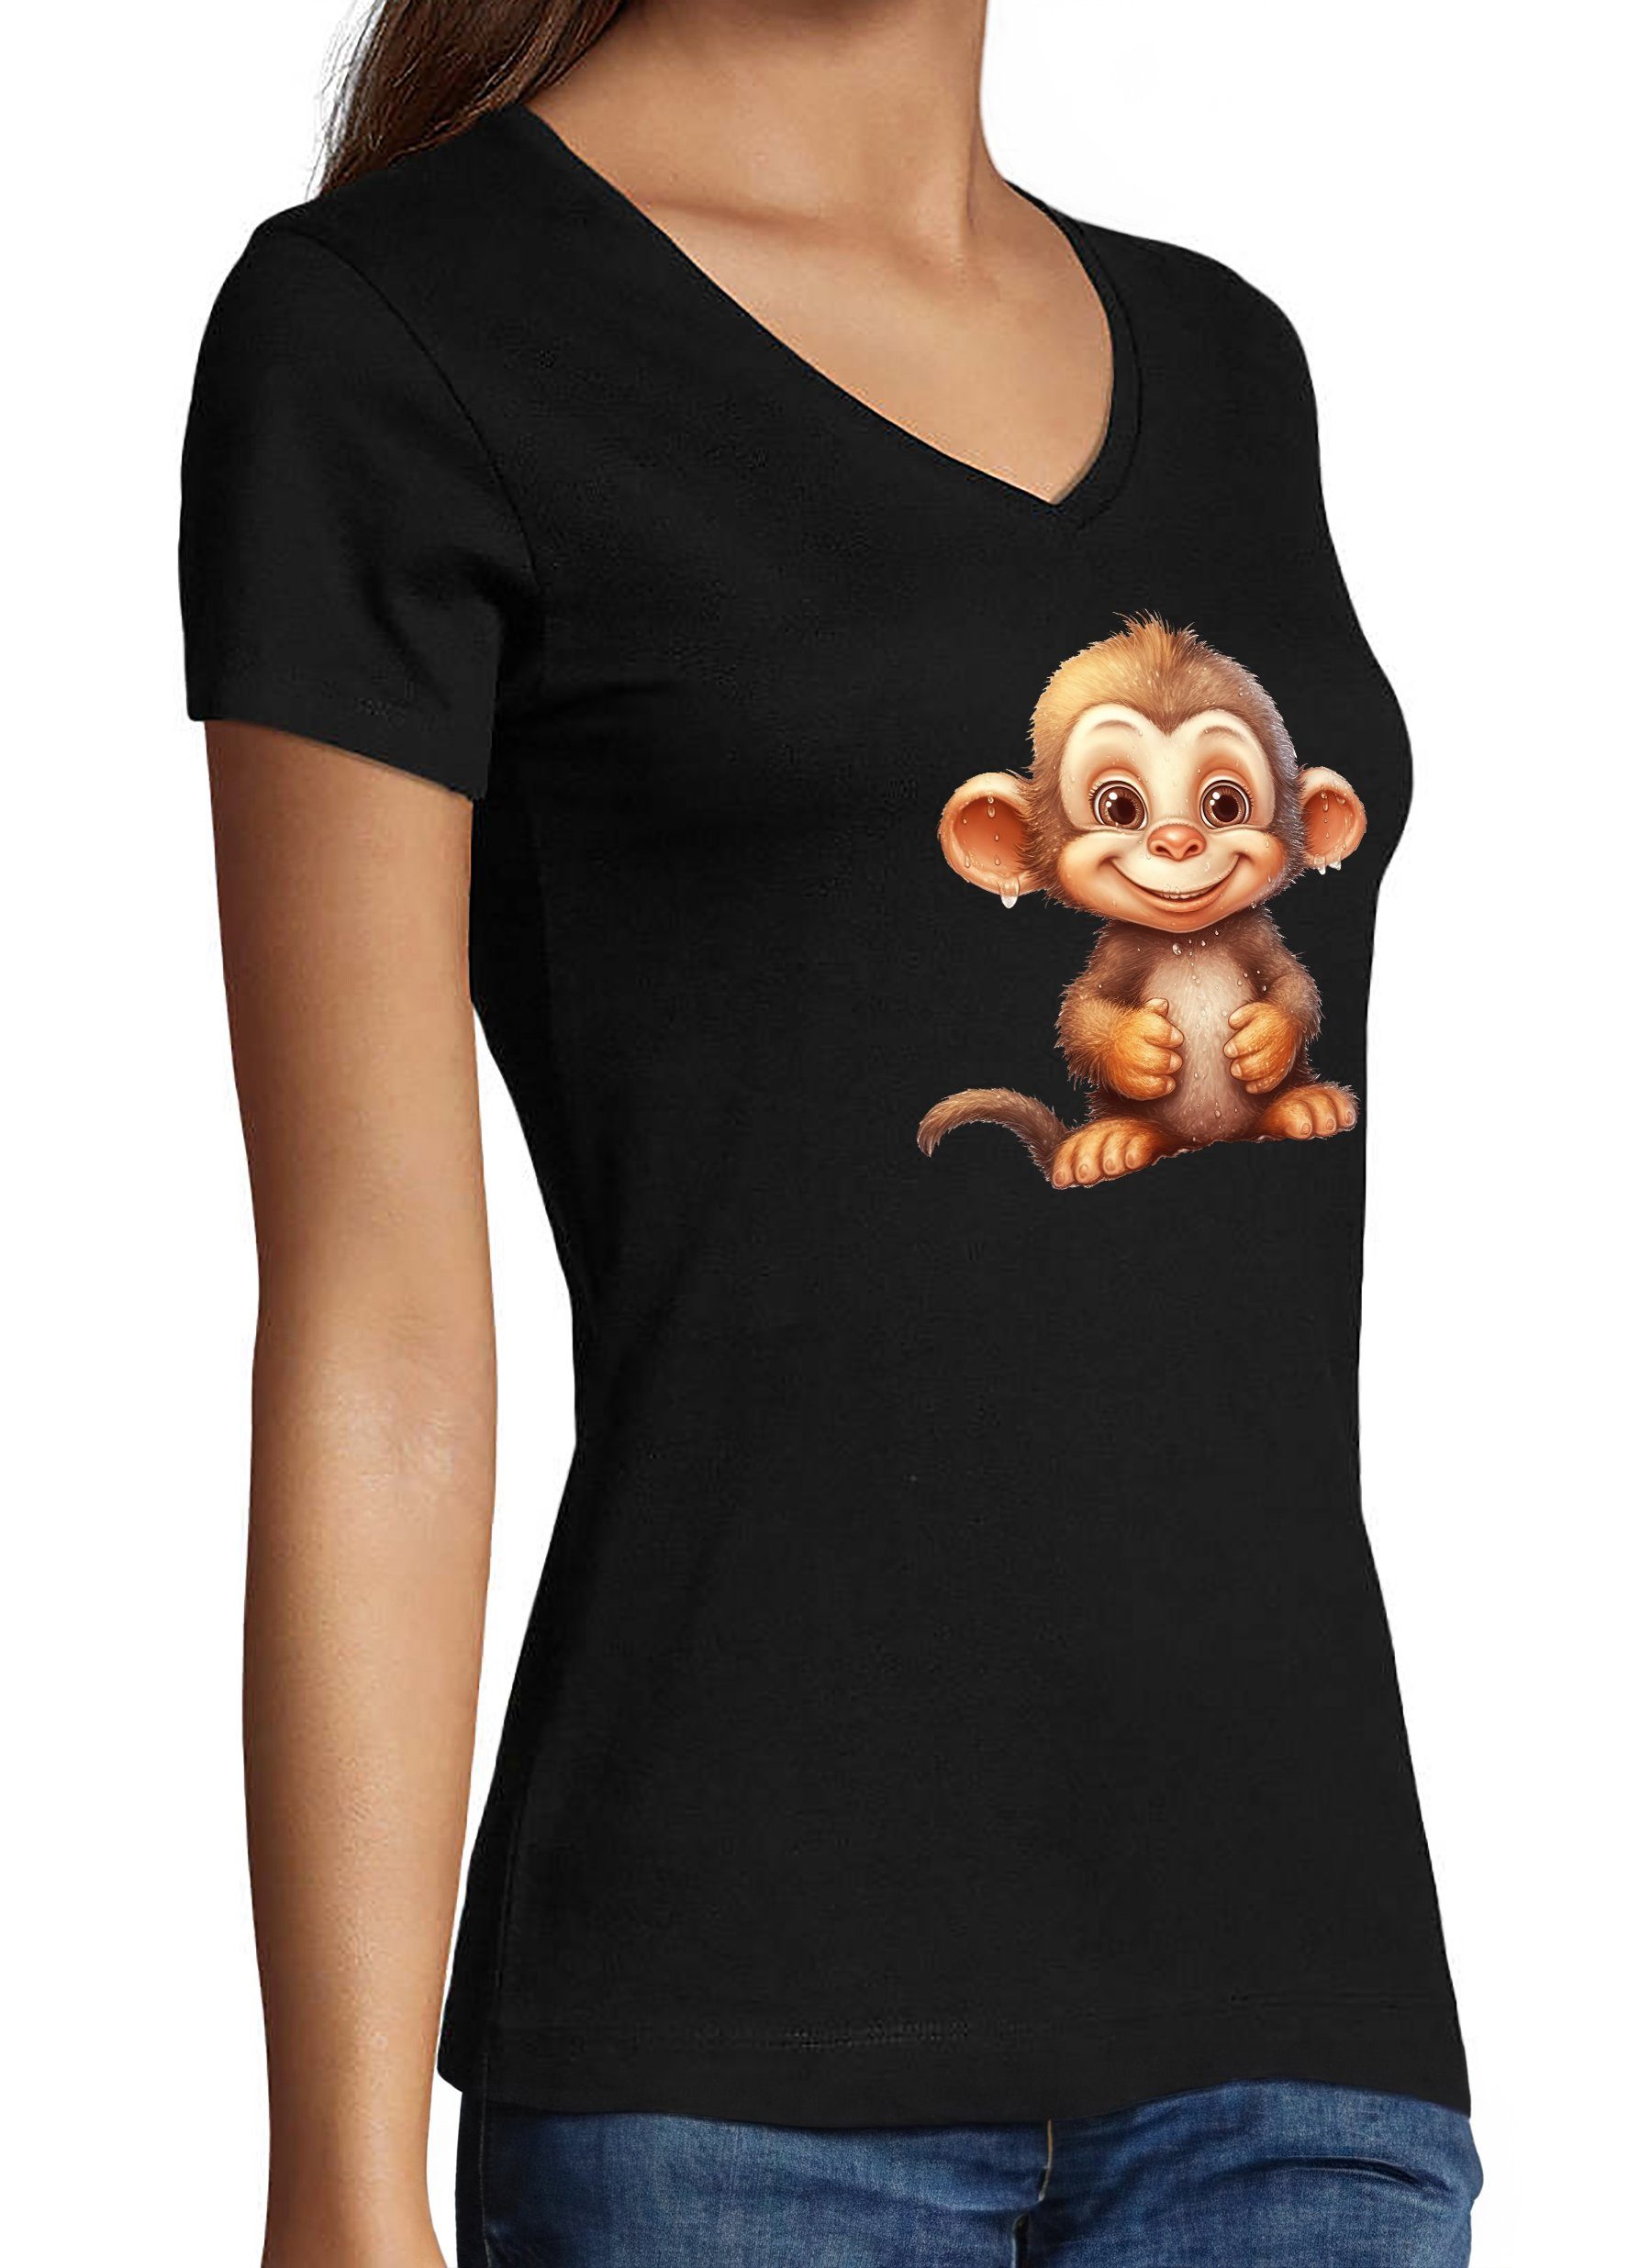 MyDesign24 T-Shirt Damen Affe Fit schwarz Wildtier V-Ausschnitt Baumwollshirt Schimpanse Print Baby mit Aufdruck Slim - Shirt